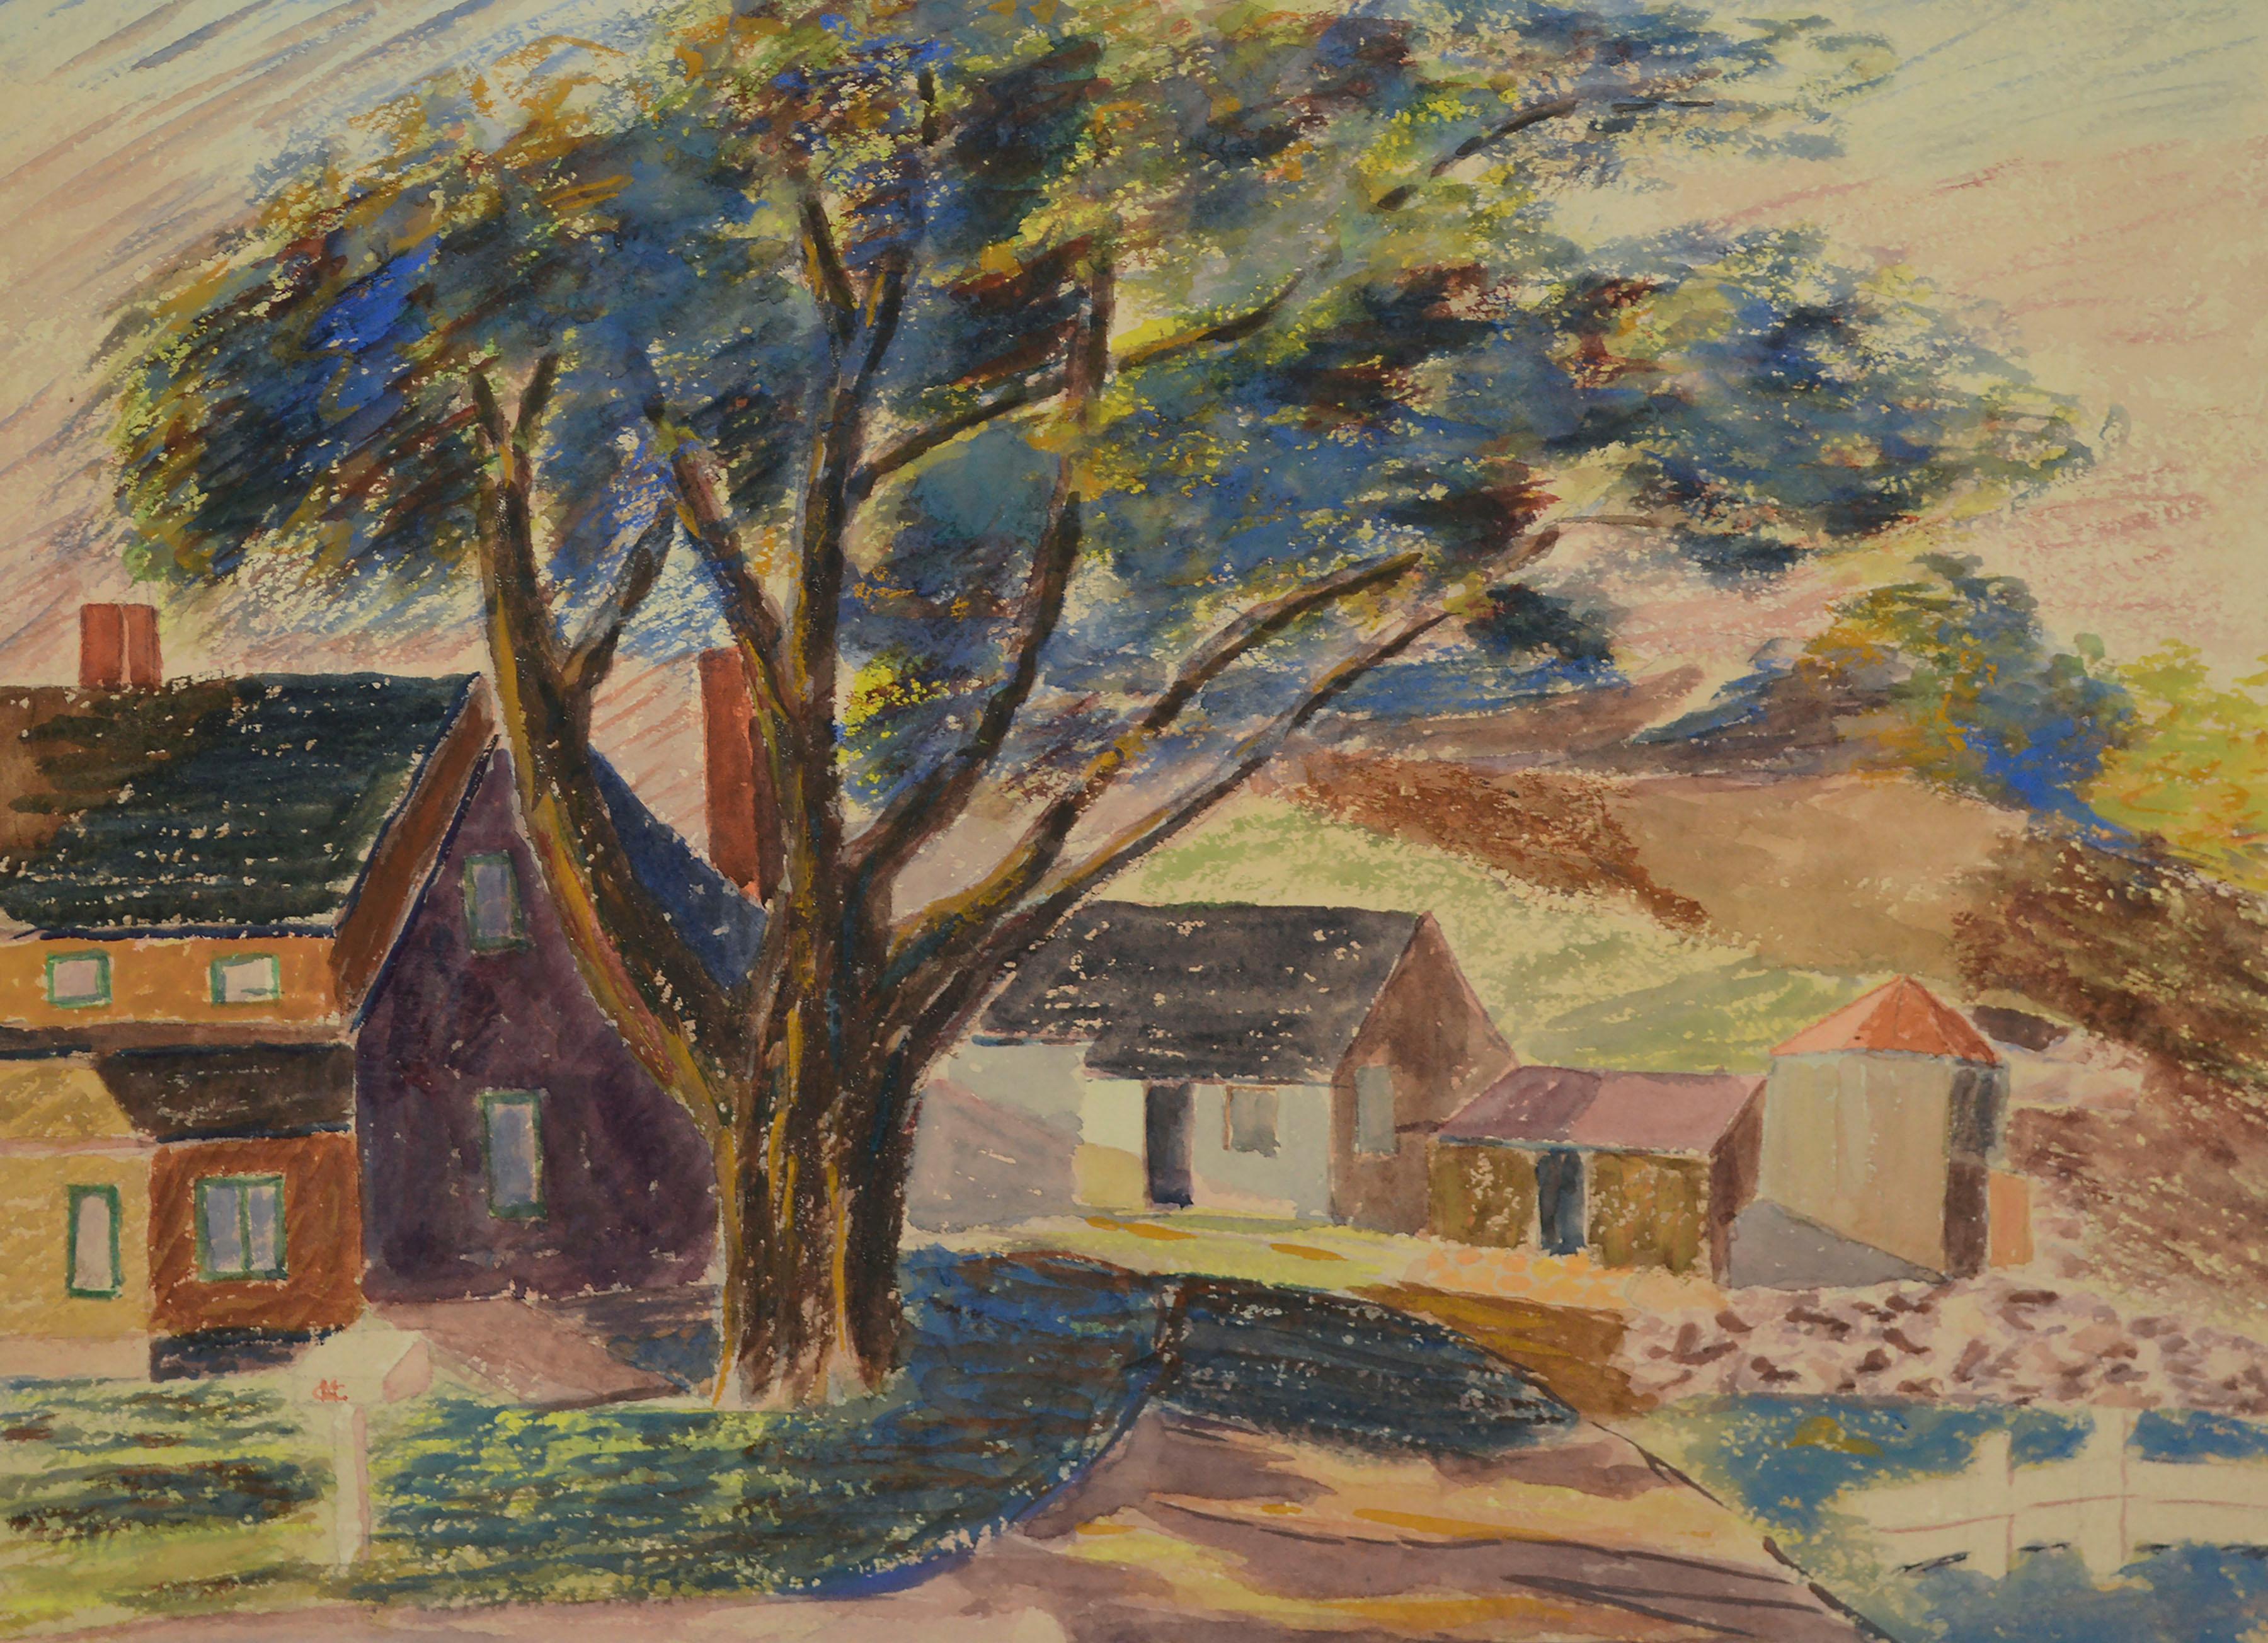 Mystic Connecticut Post Impressionist Landscape by Herbert Mortimer Gesner 1940  - Art by Herbert Mortimer Gesner Sr. 